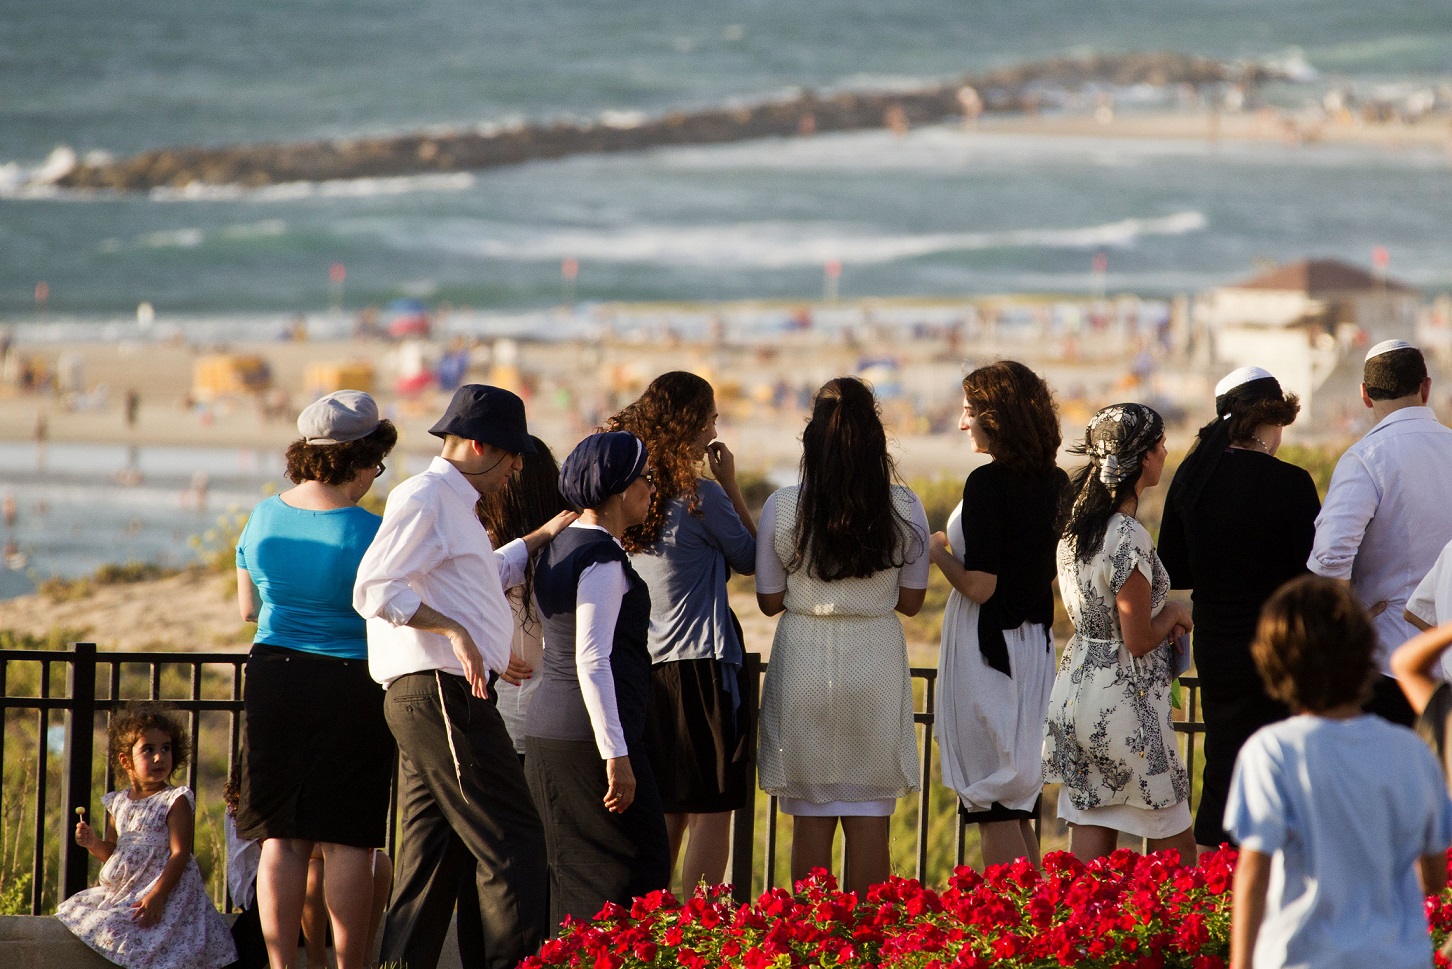 Des personnes de confession juive lisent la prière du Tachlikh, dans la ville côtière israélienne de Netanya, pendant Roch Hachana, le Nouvel An juif, le 5 septembre 2013 (AFP)